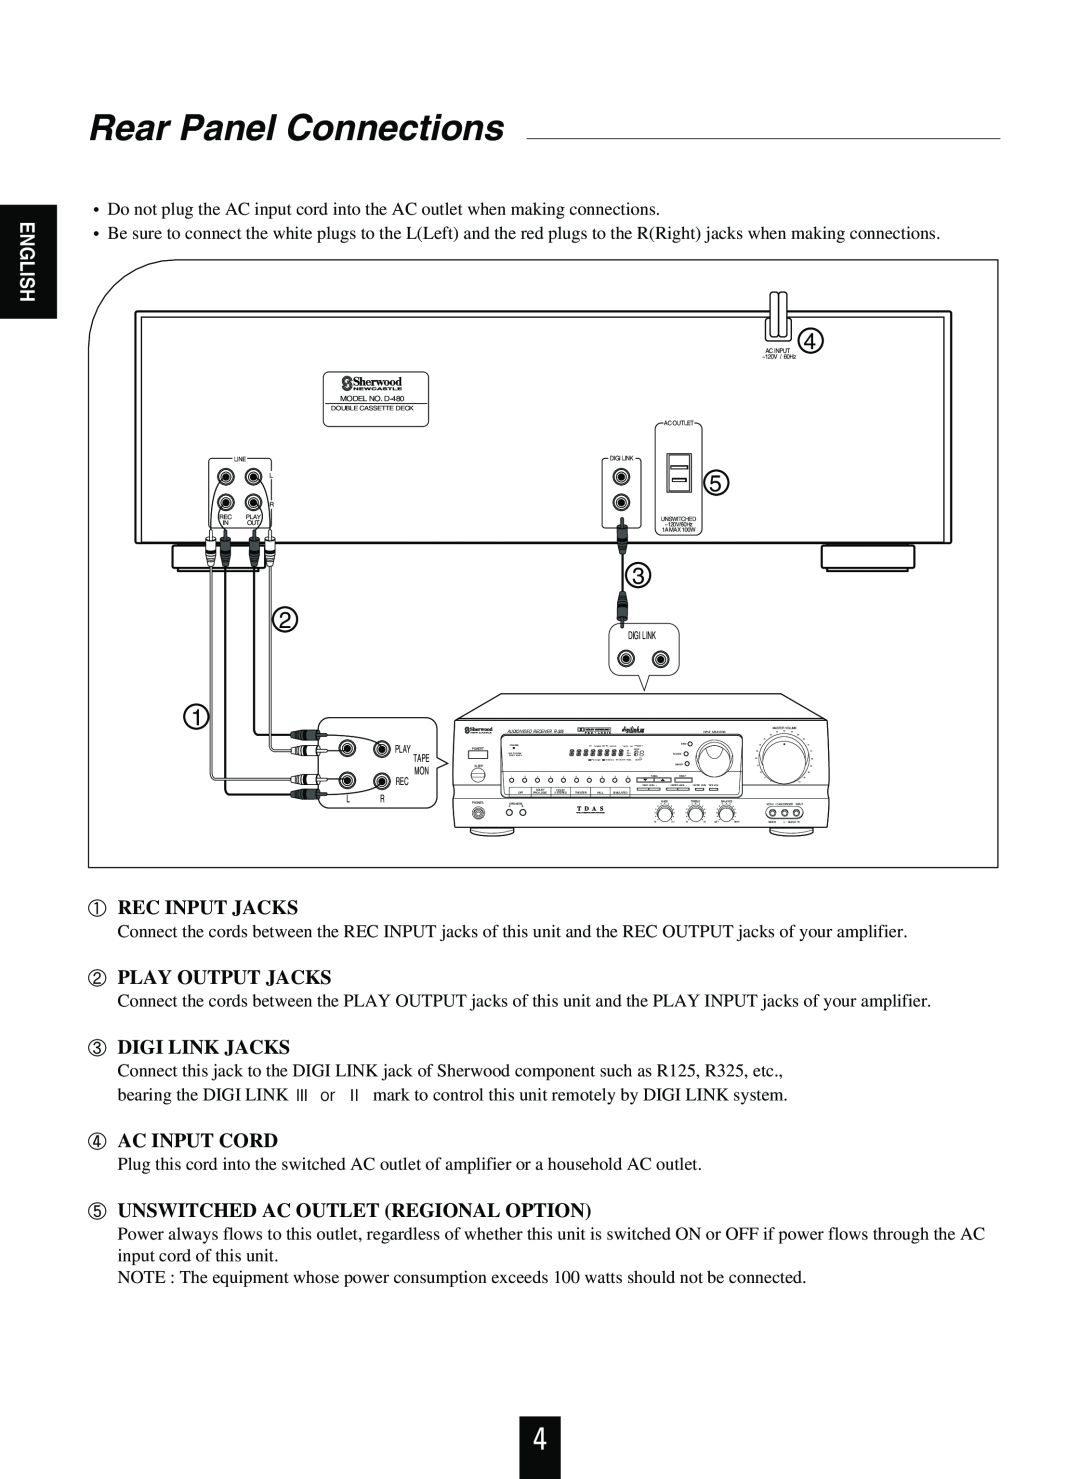 Sherwood D-480 Rear Panel Connections, Rec Input Jacks, Play Output Jacks, Digi Link Jacks, Ac Input Cord, English 